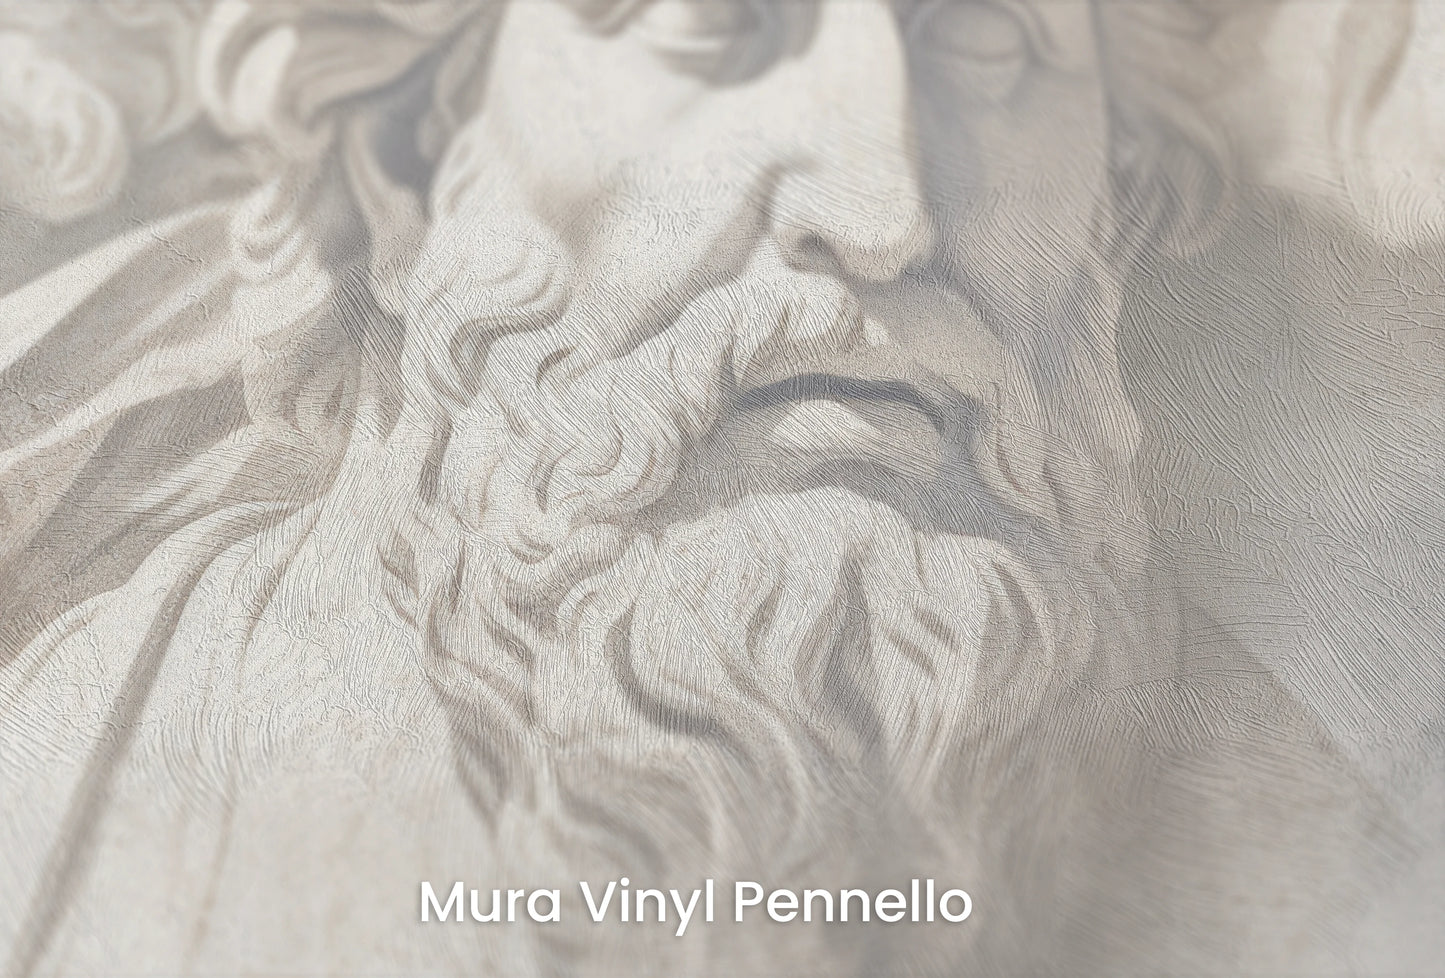 Zbliżenie na artystyczną fototapetę o nazwie Meditation of Heraclitus na podłożu Mura Vinyl Pennello - faktura pociągnięć pędzla malarskiego.